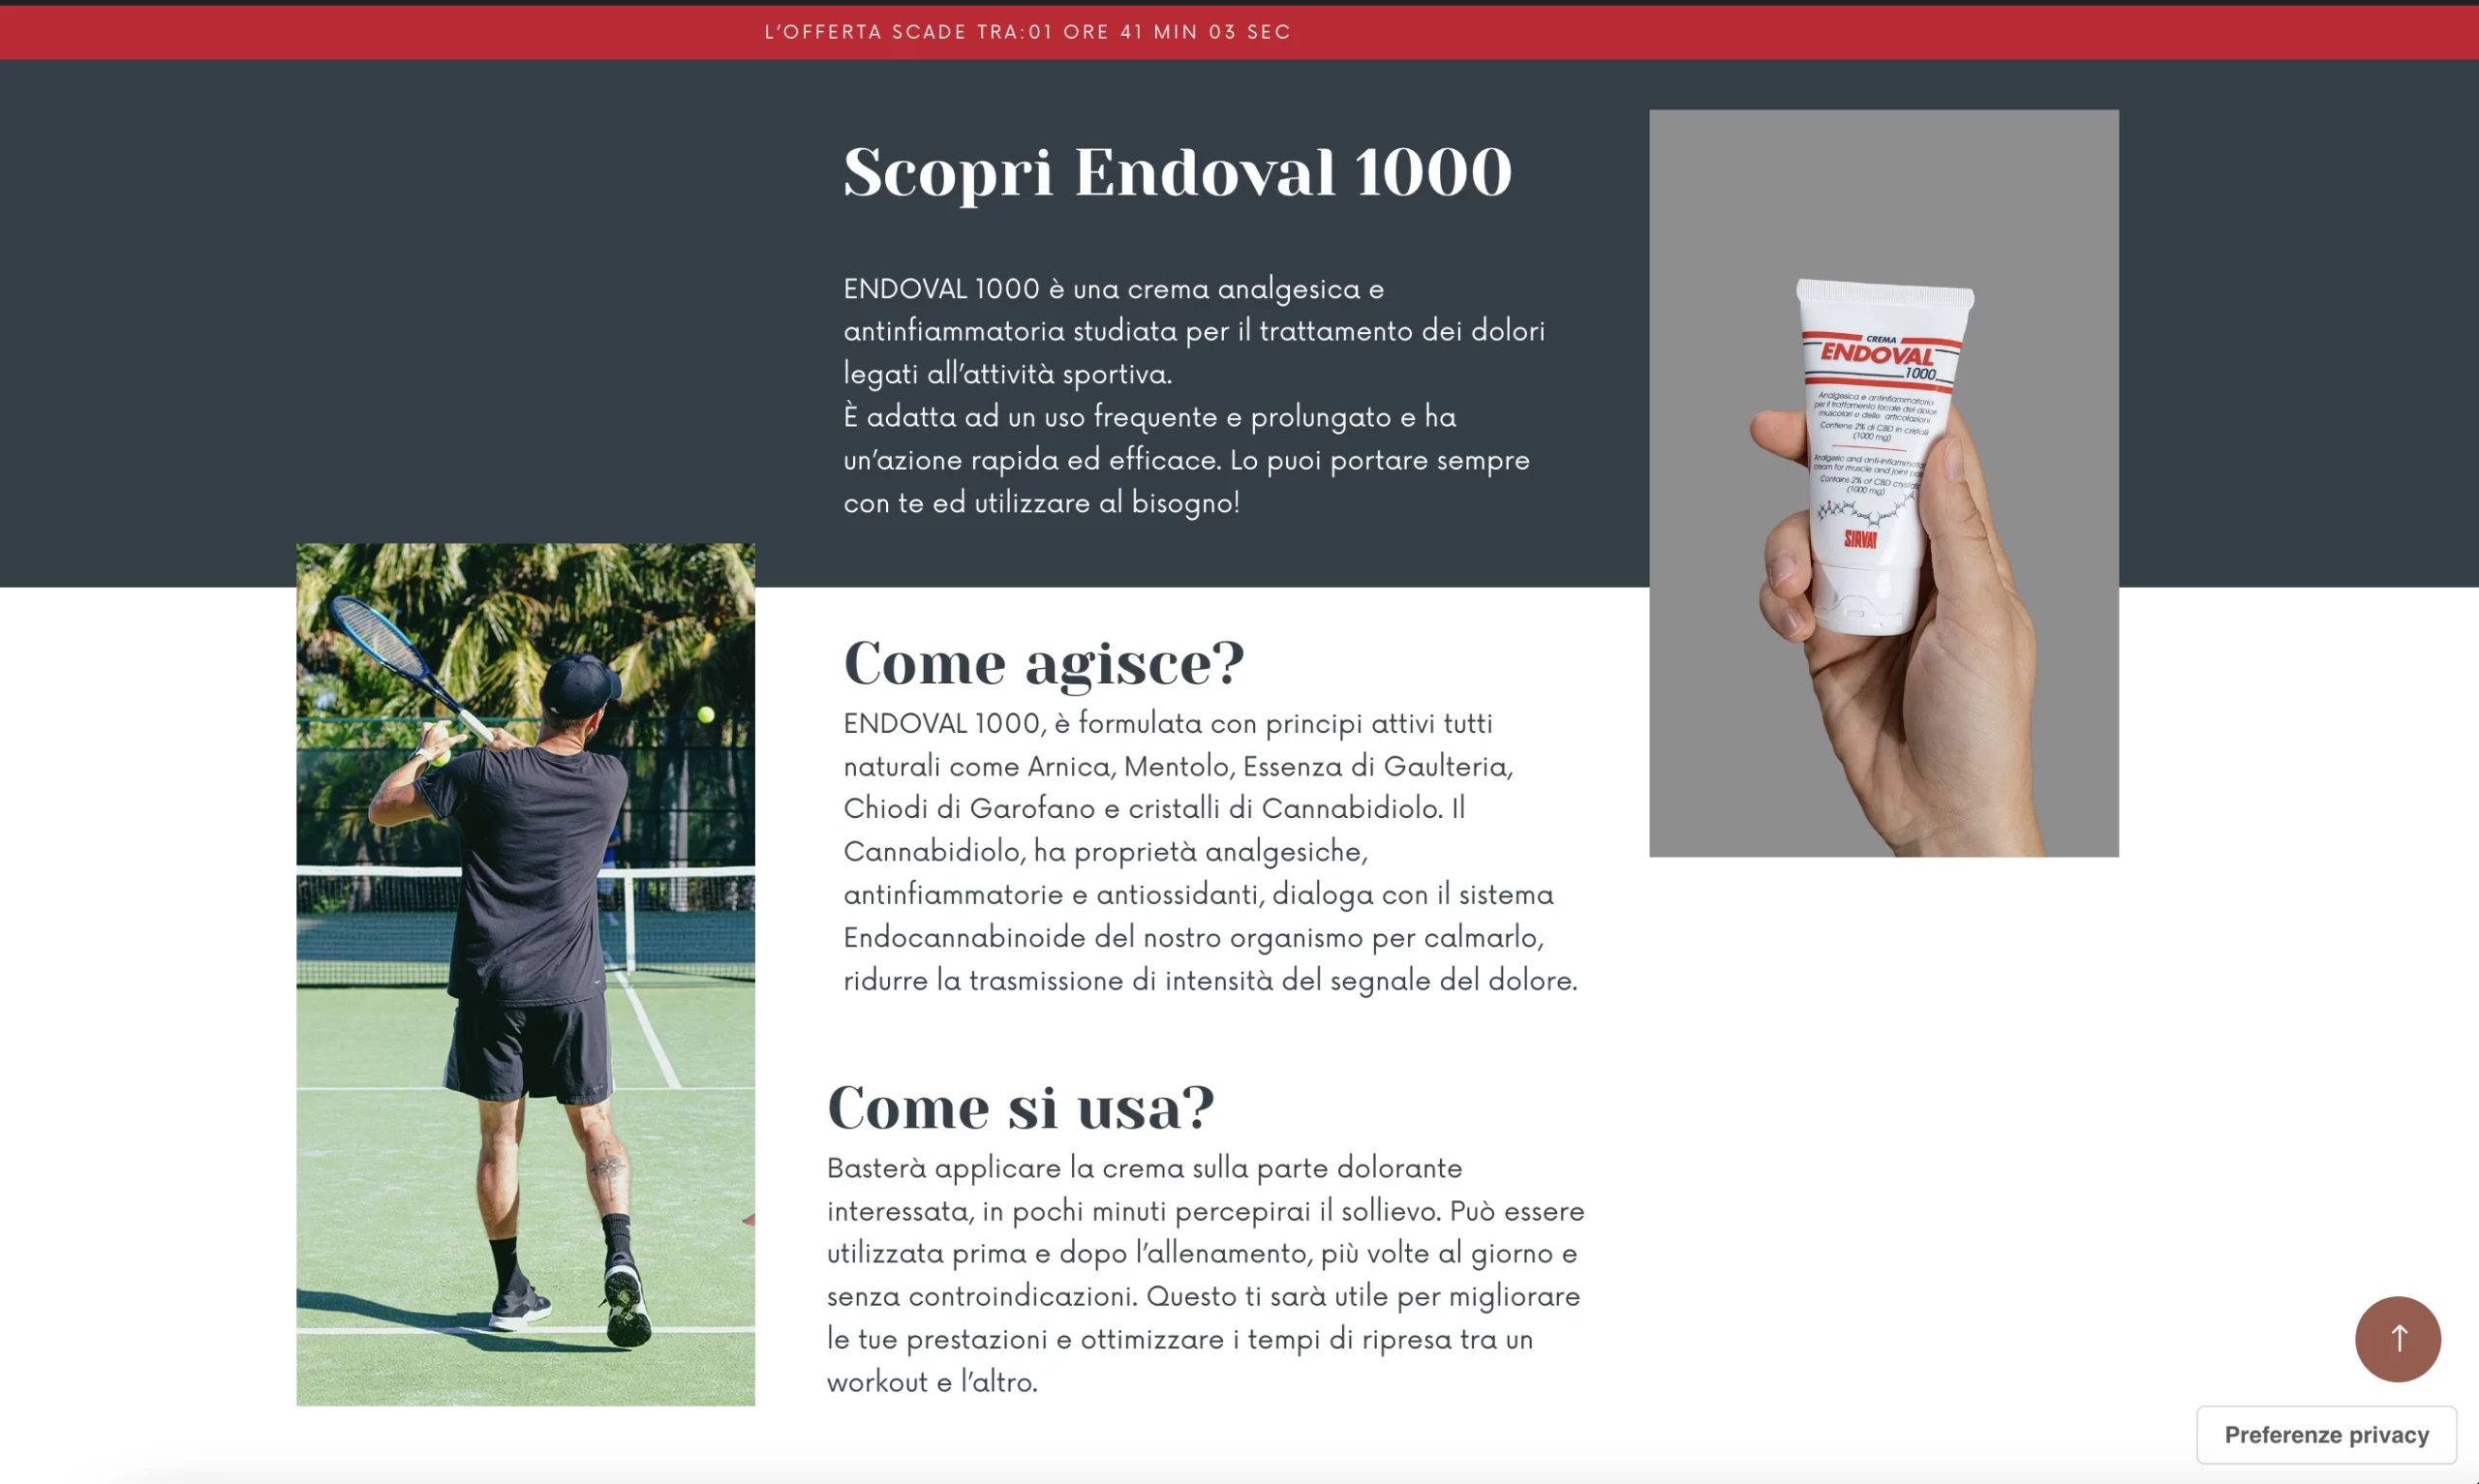 Pagina promozionale Endoval 1000 dedicata allo sport